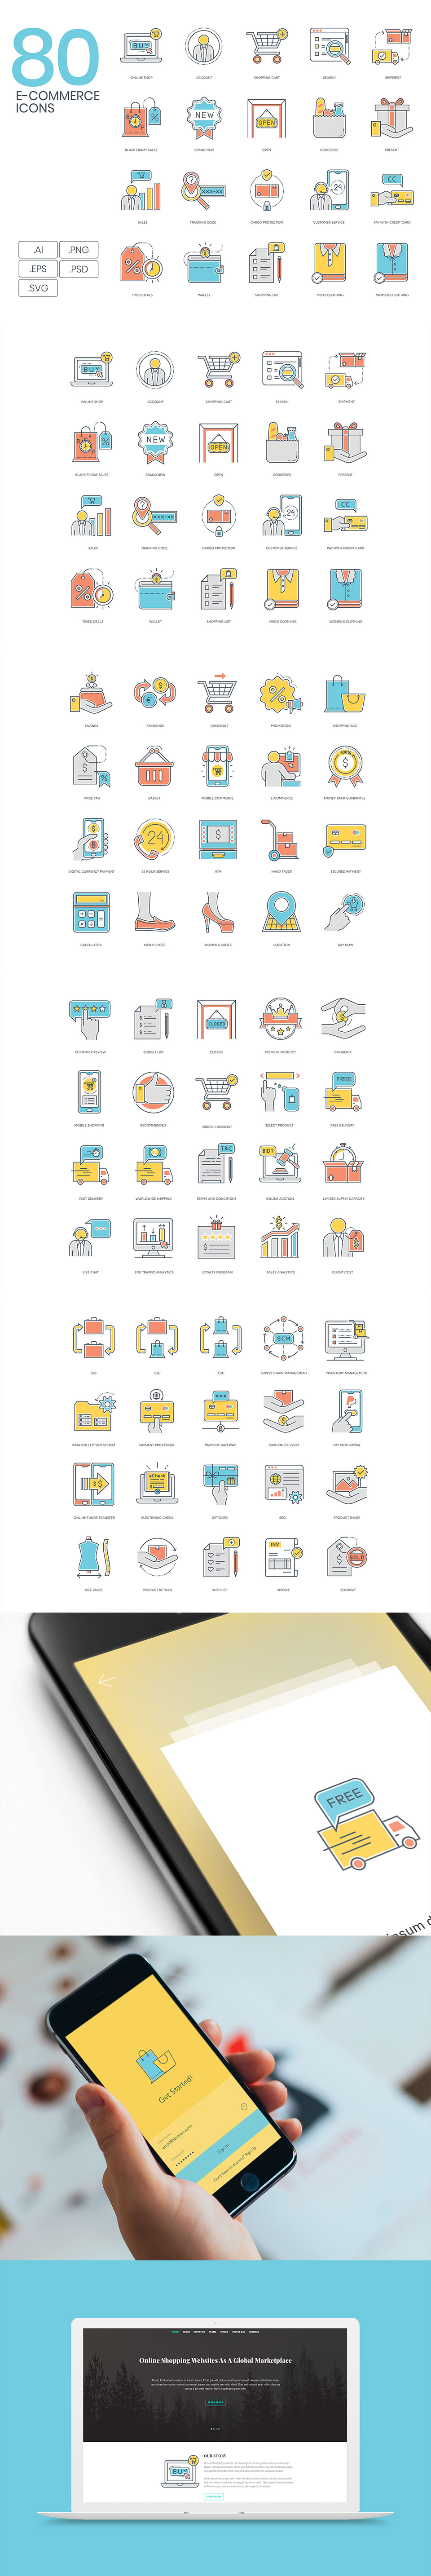 80个精品电商概念创意图形图标素材下载 E-Commerce